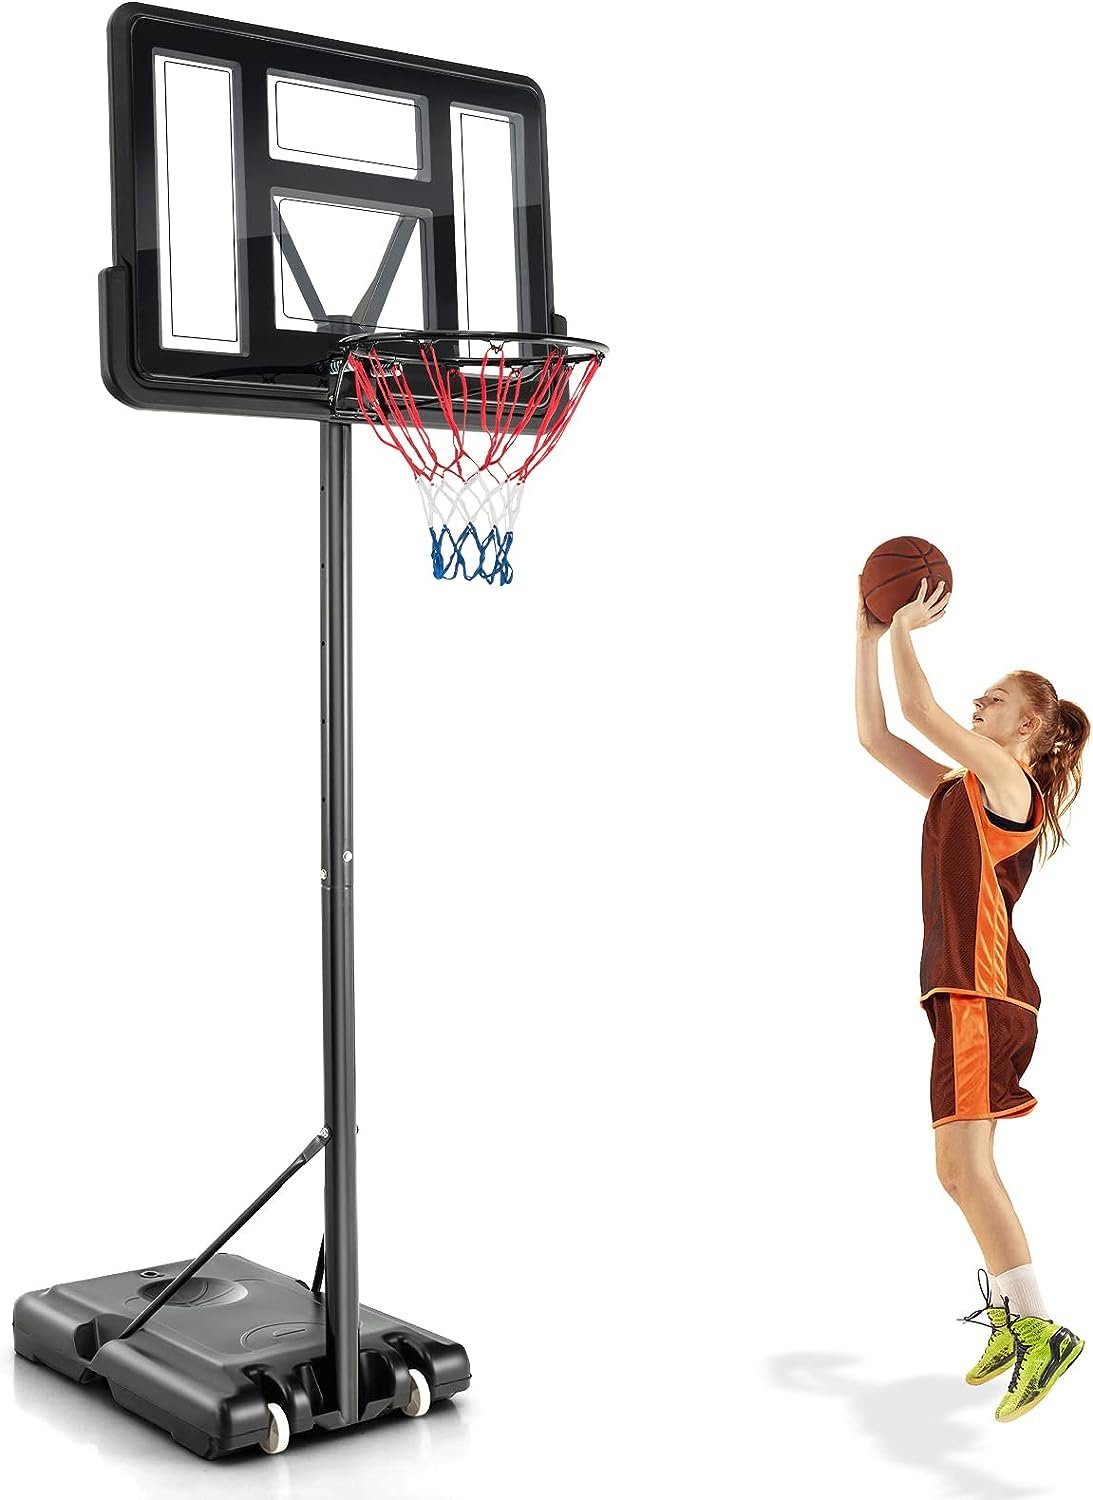 KOMFOTTEU 130 cm höhenverstellbar Basketballkorb bis 305 Basketballziel-System,